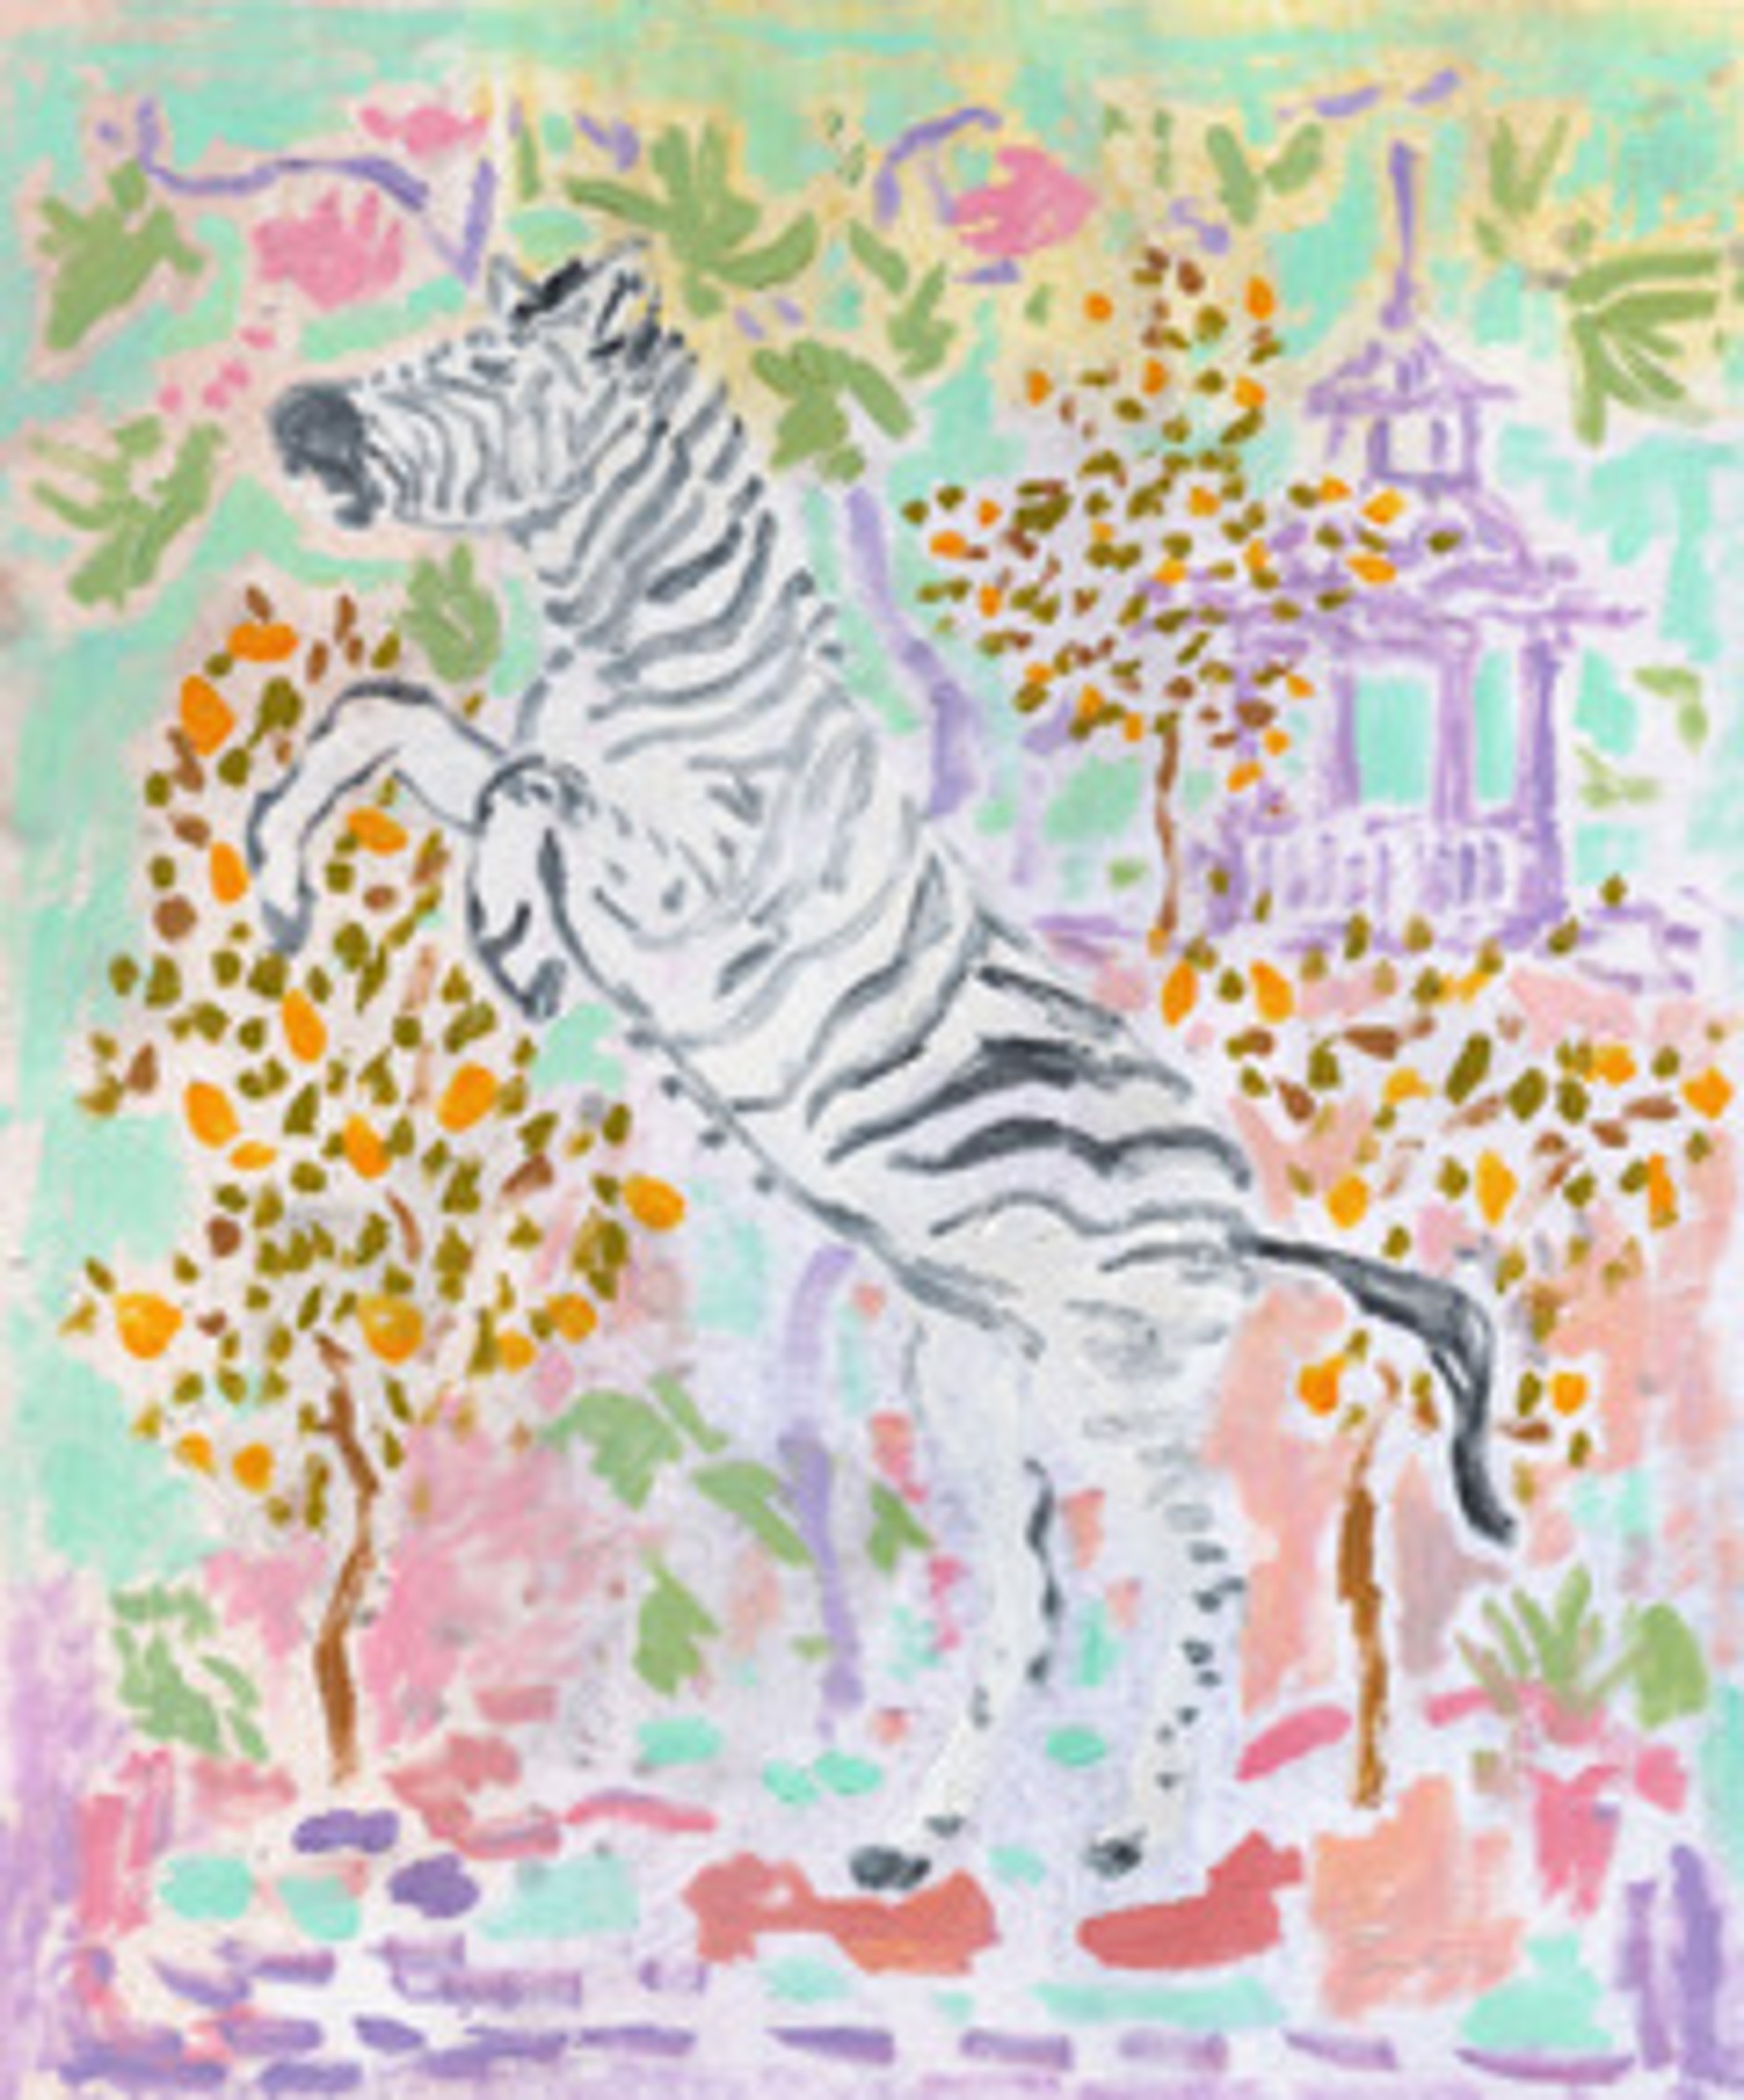 Zebra Facing Left by Anne-Louise Ewen